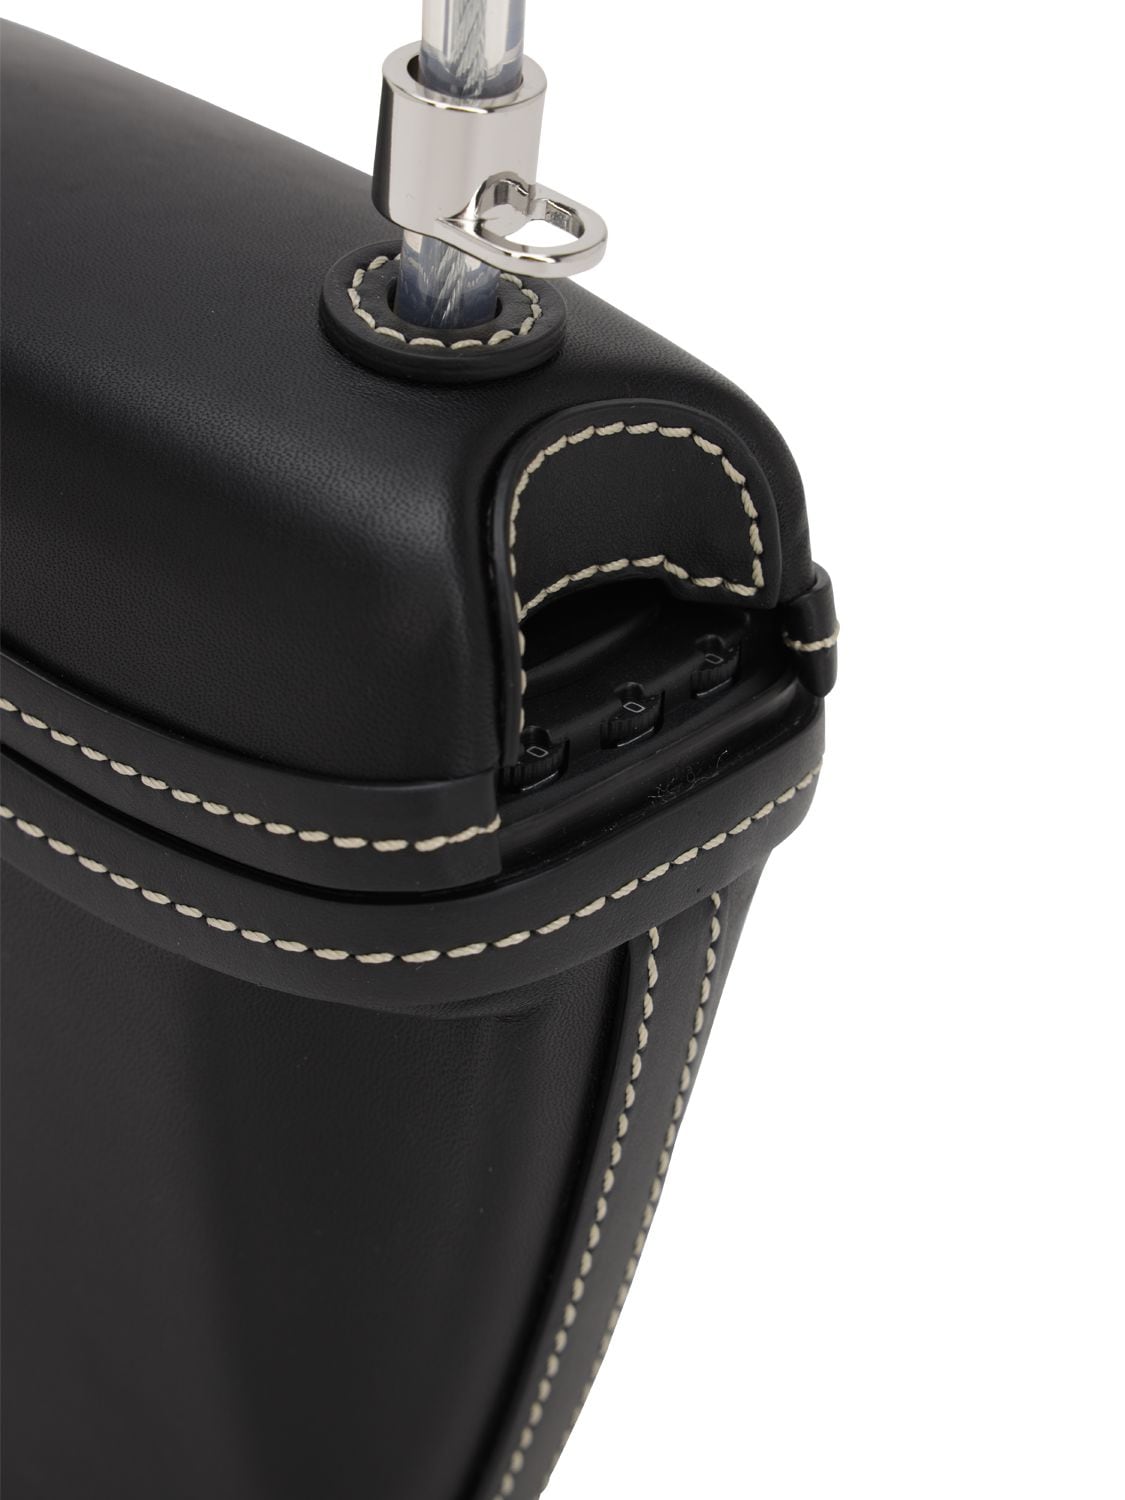 Palm Angels Padlock Leather Shoulder Bag In Black | ModeSens